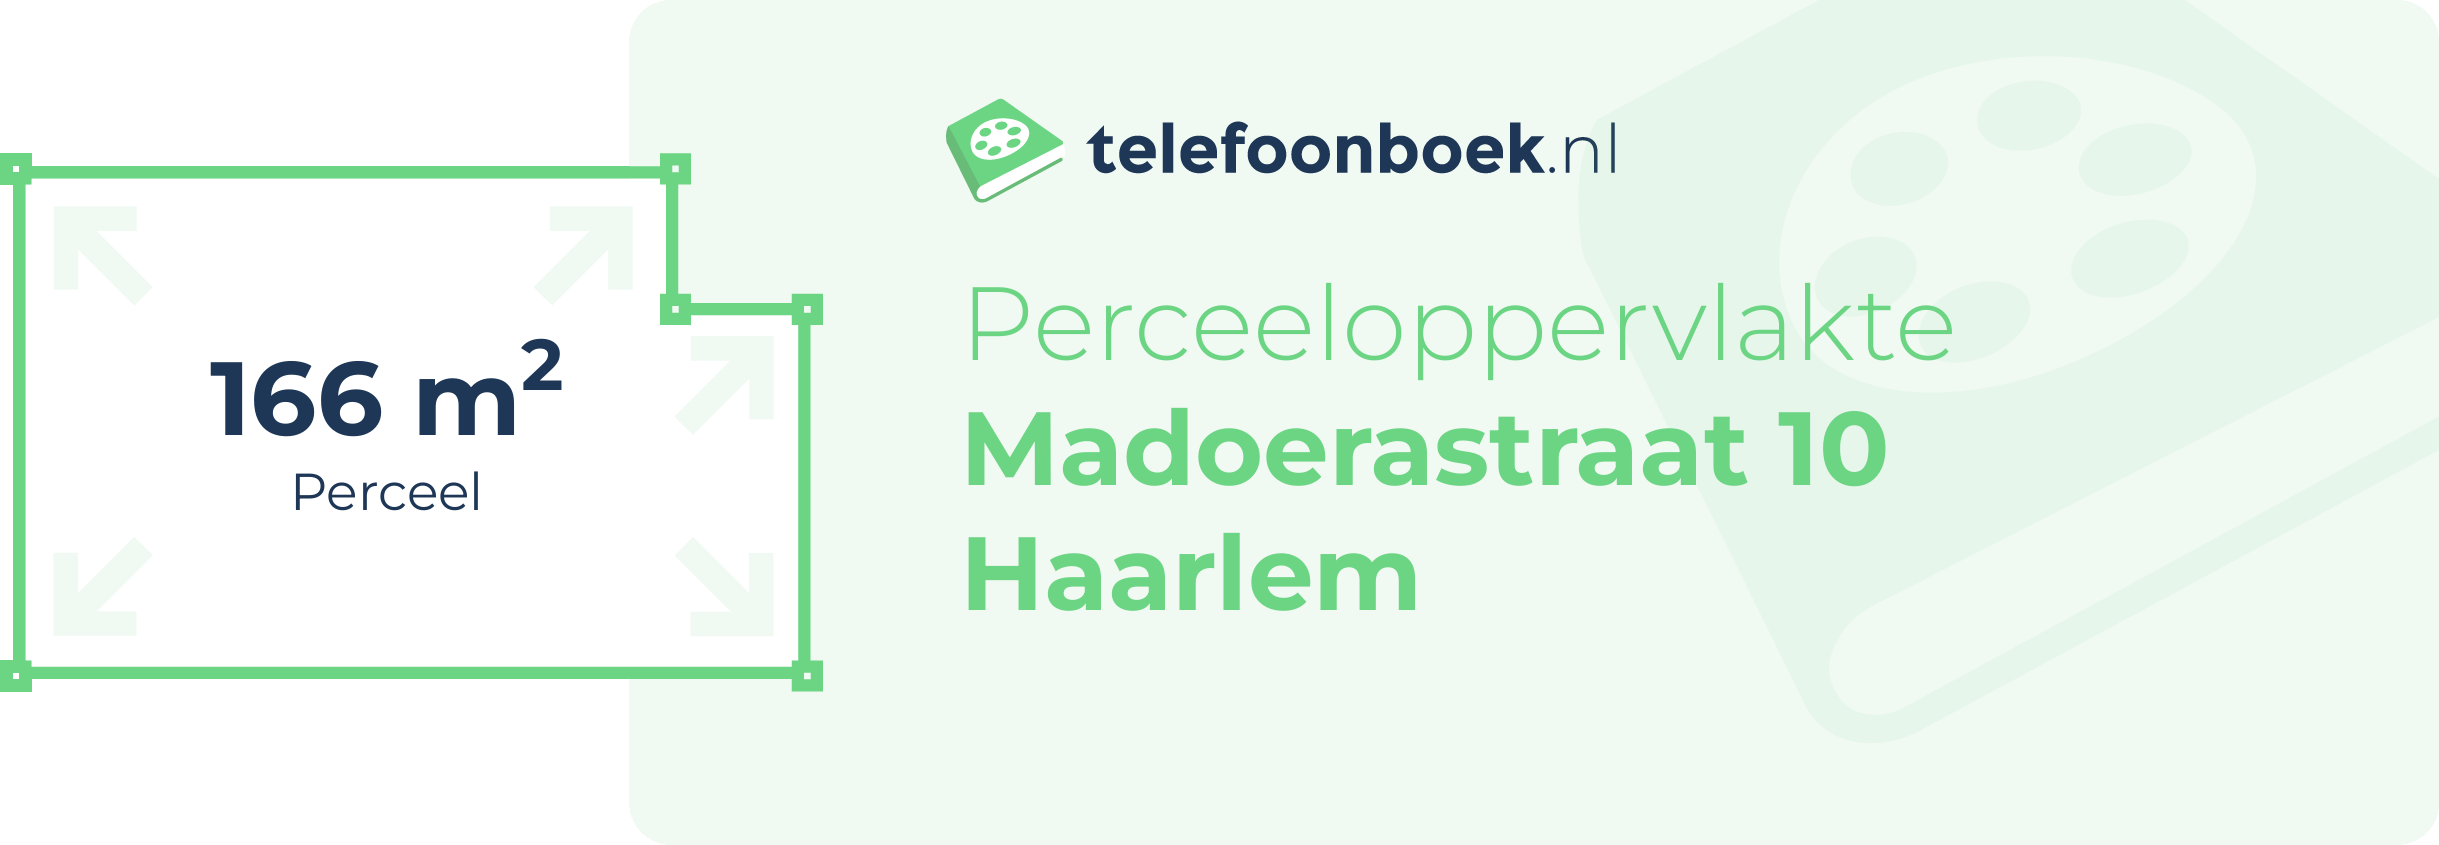 Perceeloppervlakte Madoerastraat 10 Haarlem